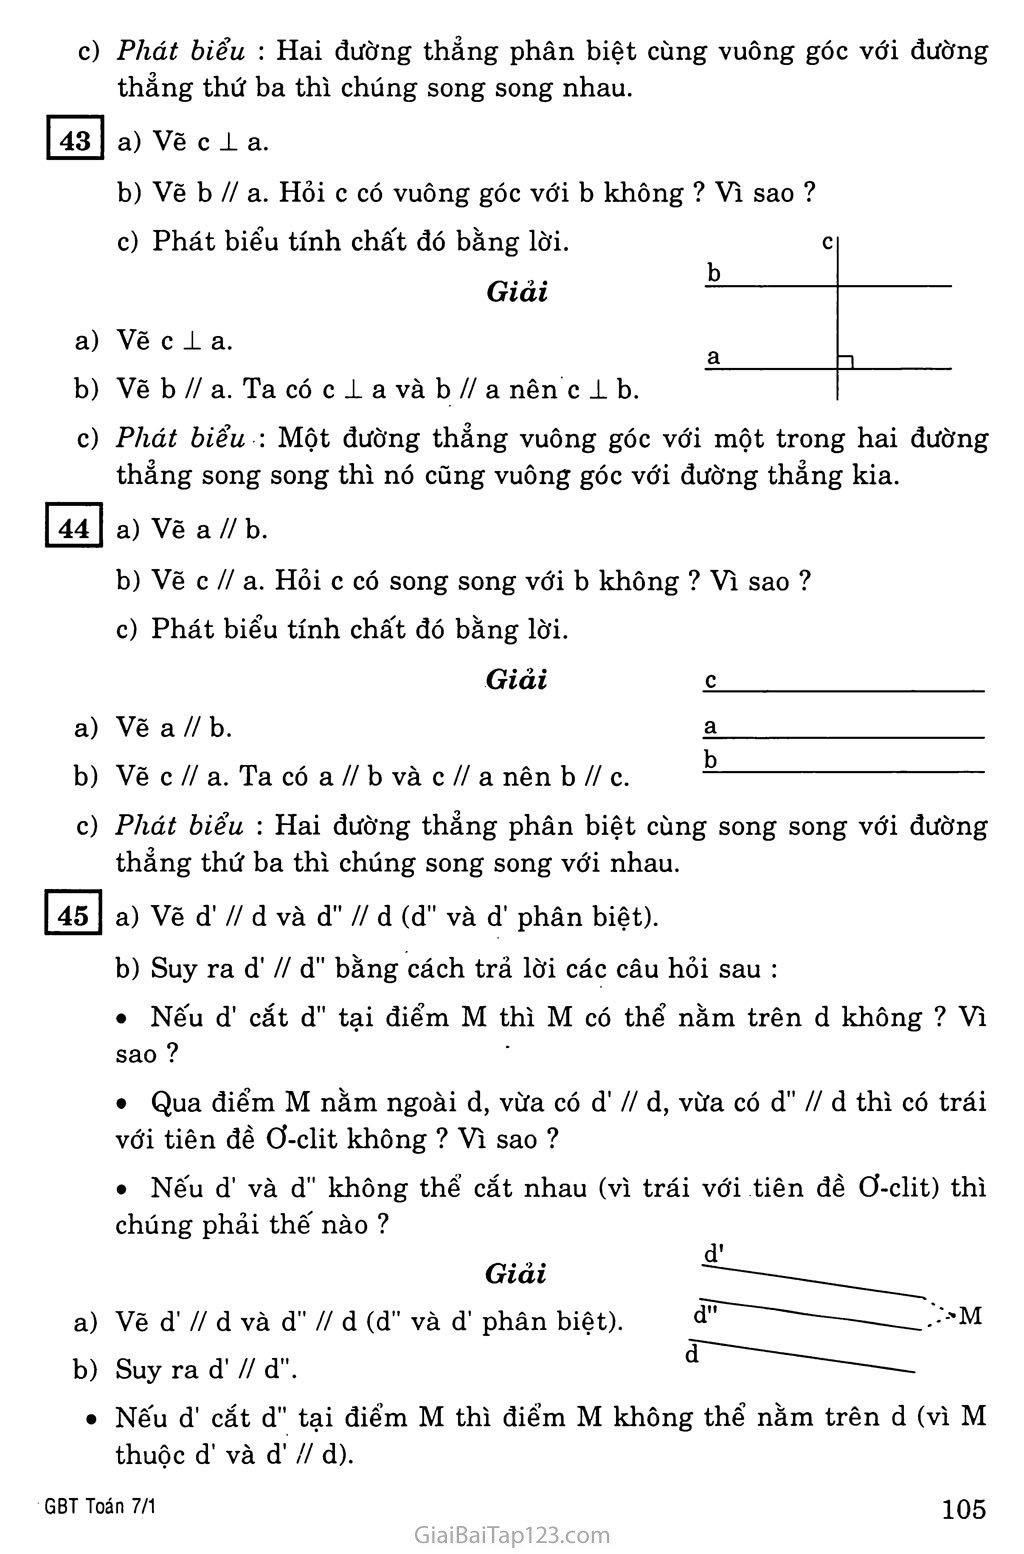 §6. Từ vuông góc đến song song trang 3